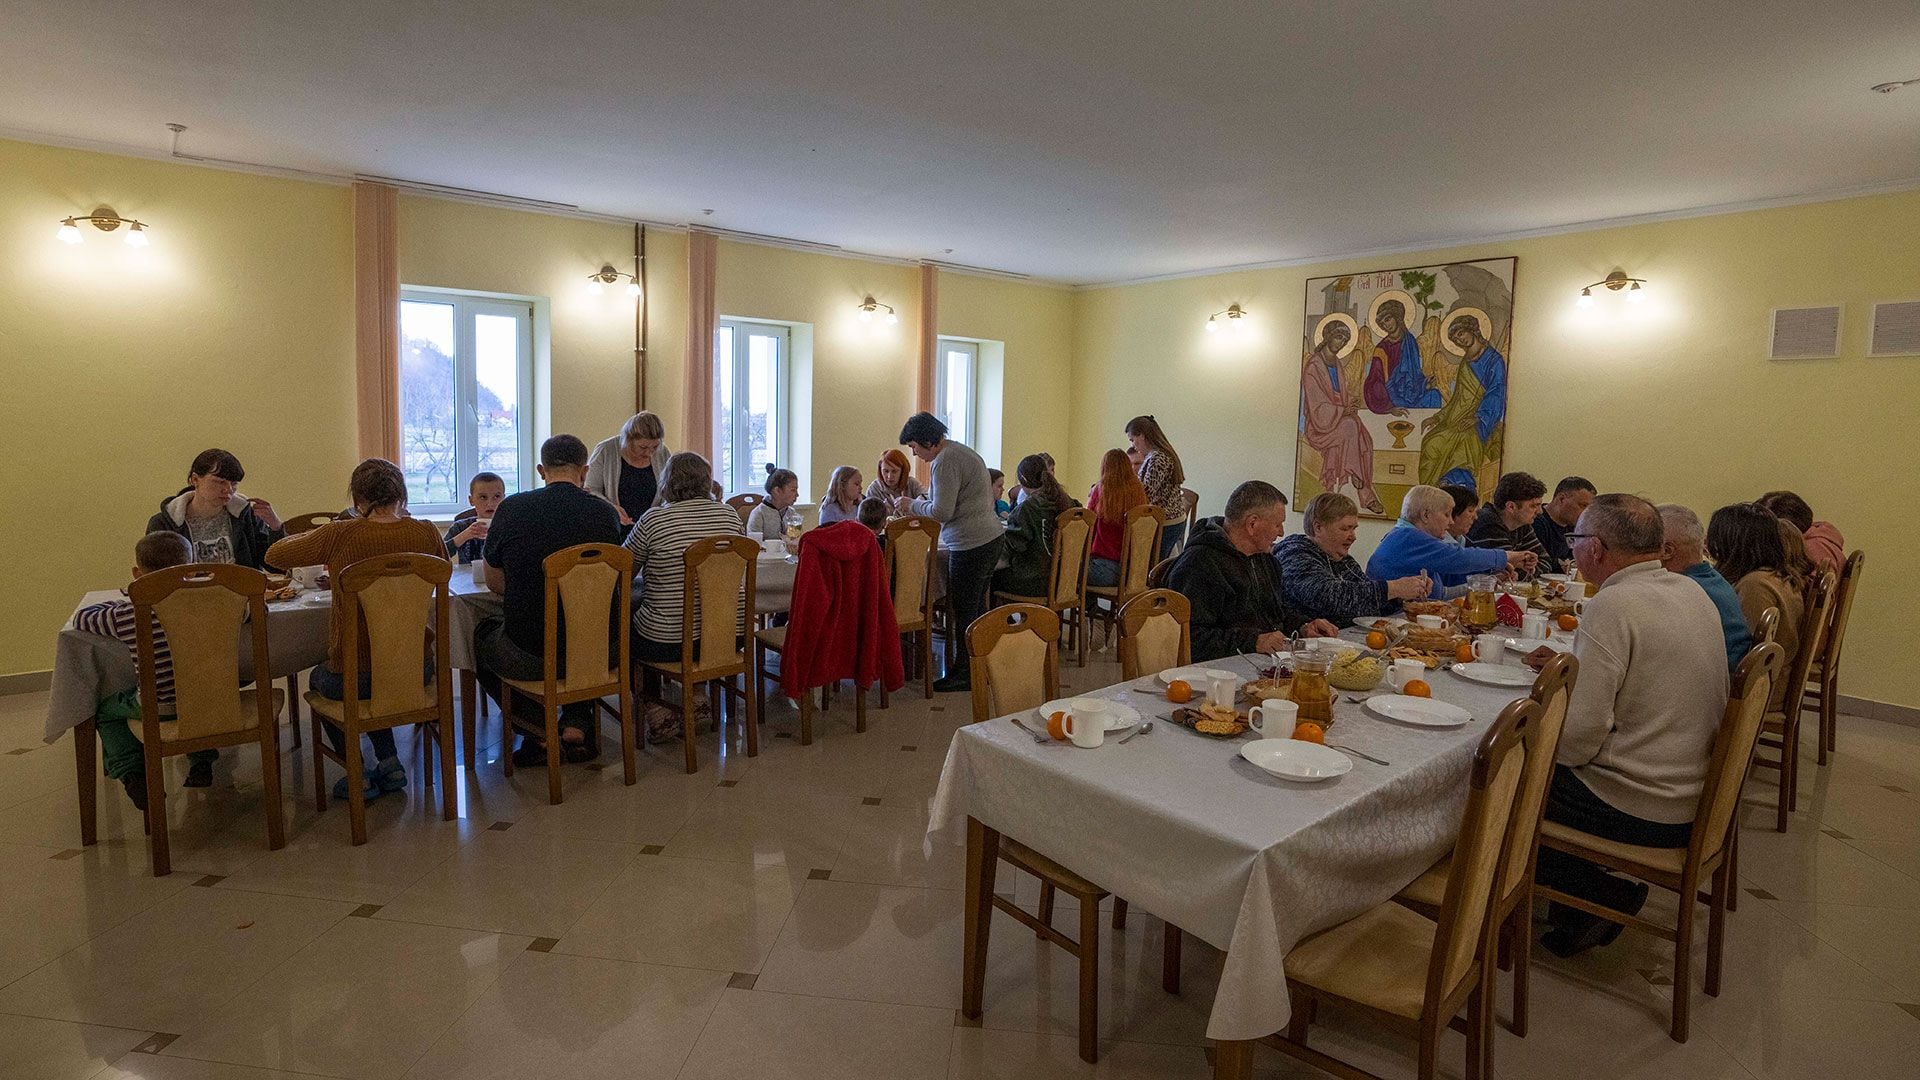 Los desplazados internos cenan en el Monasterio de Mujeres Hoshiv, donde las monjas han recibido a personas que huyen de la guerra, en la región de Ivano-Frankivsk, en el oeste de Ucrania, el miércoles 6 de abril de 2022
 (Foto AP/Nariman El-Mofty)
